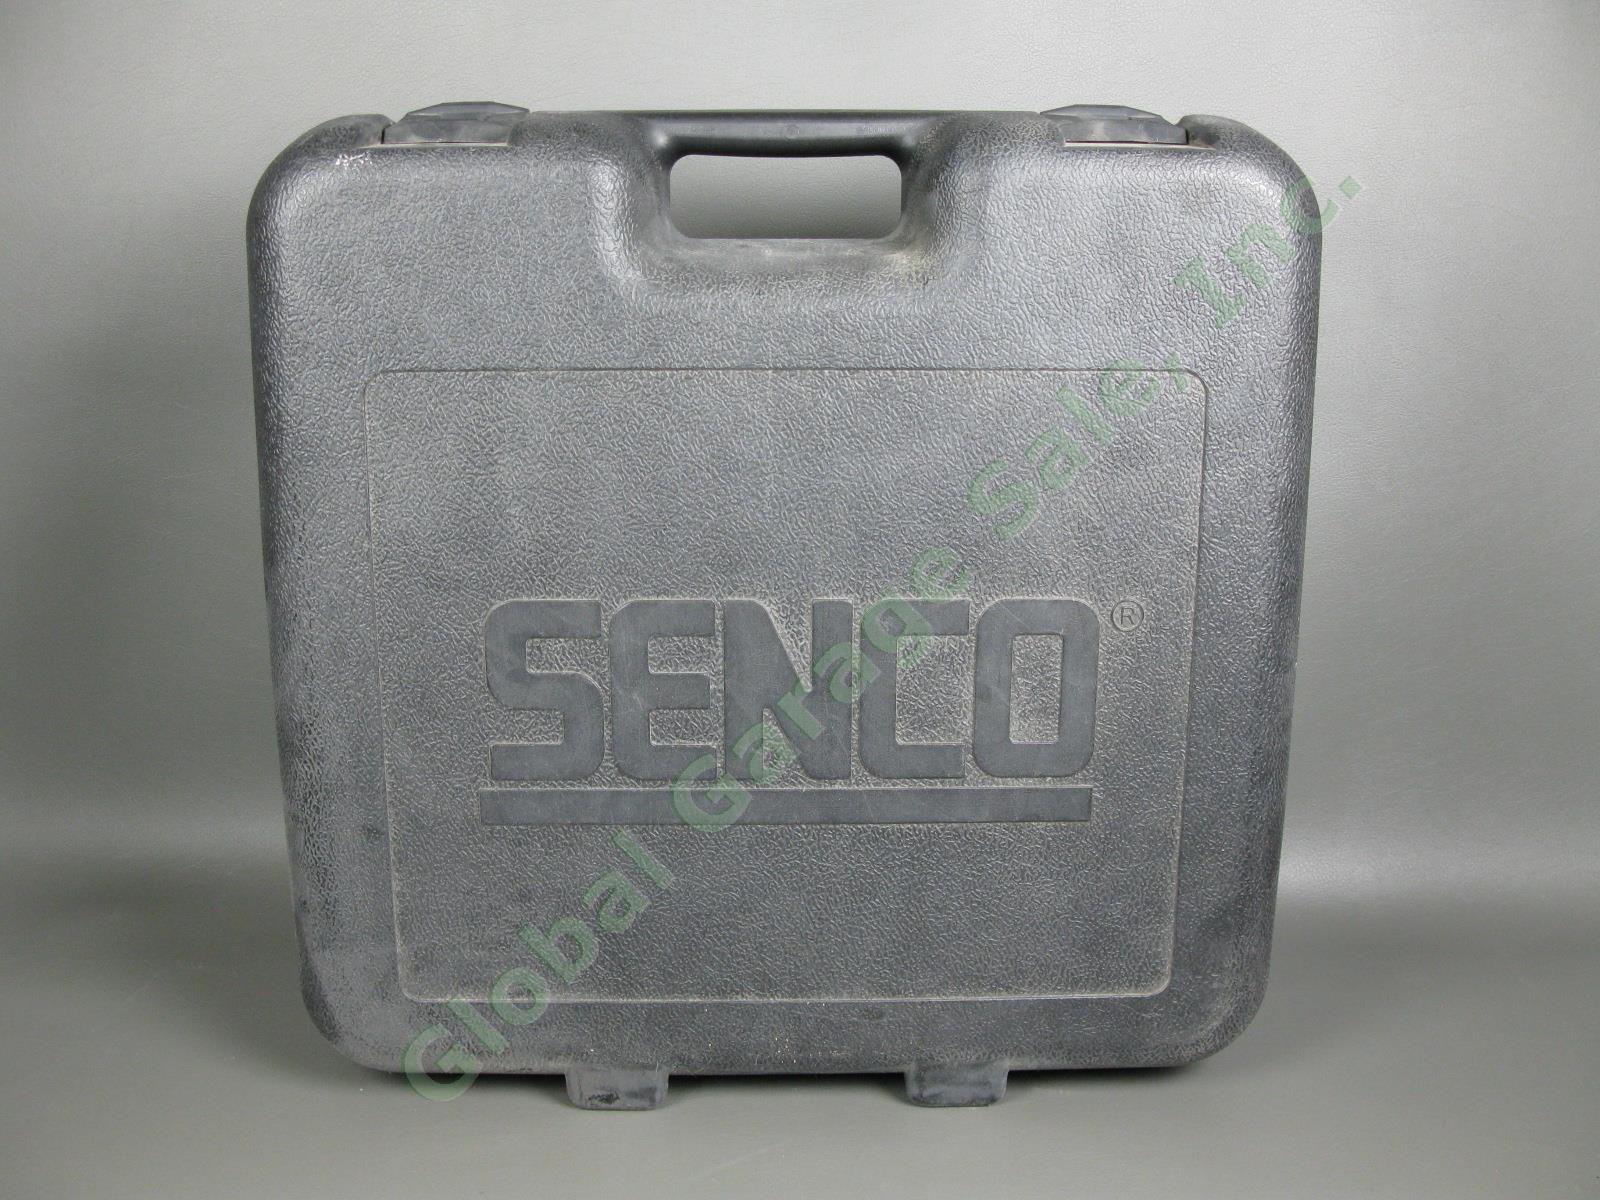 Senco FinishPro 42XP 15-Guage 2-1/2" Inch Angled Finish Nailer XtremePro Case NR 5